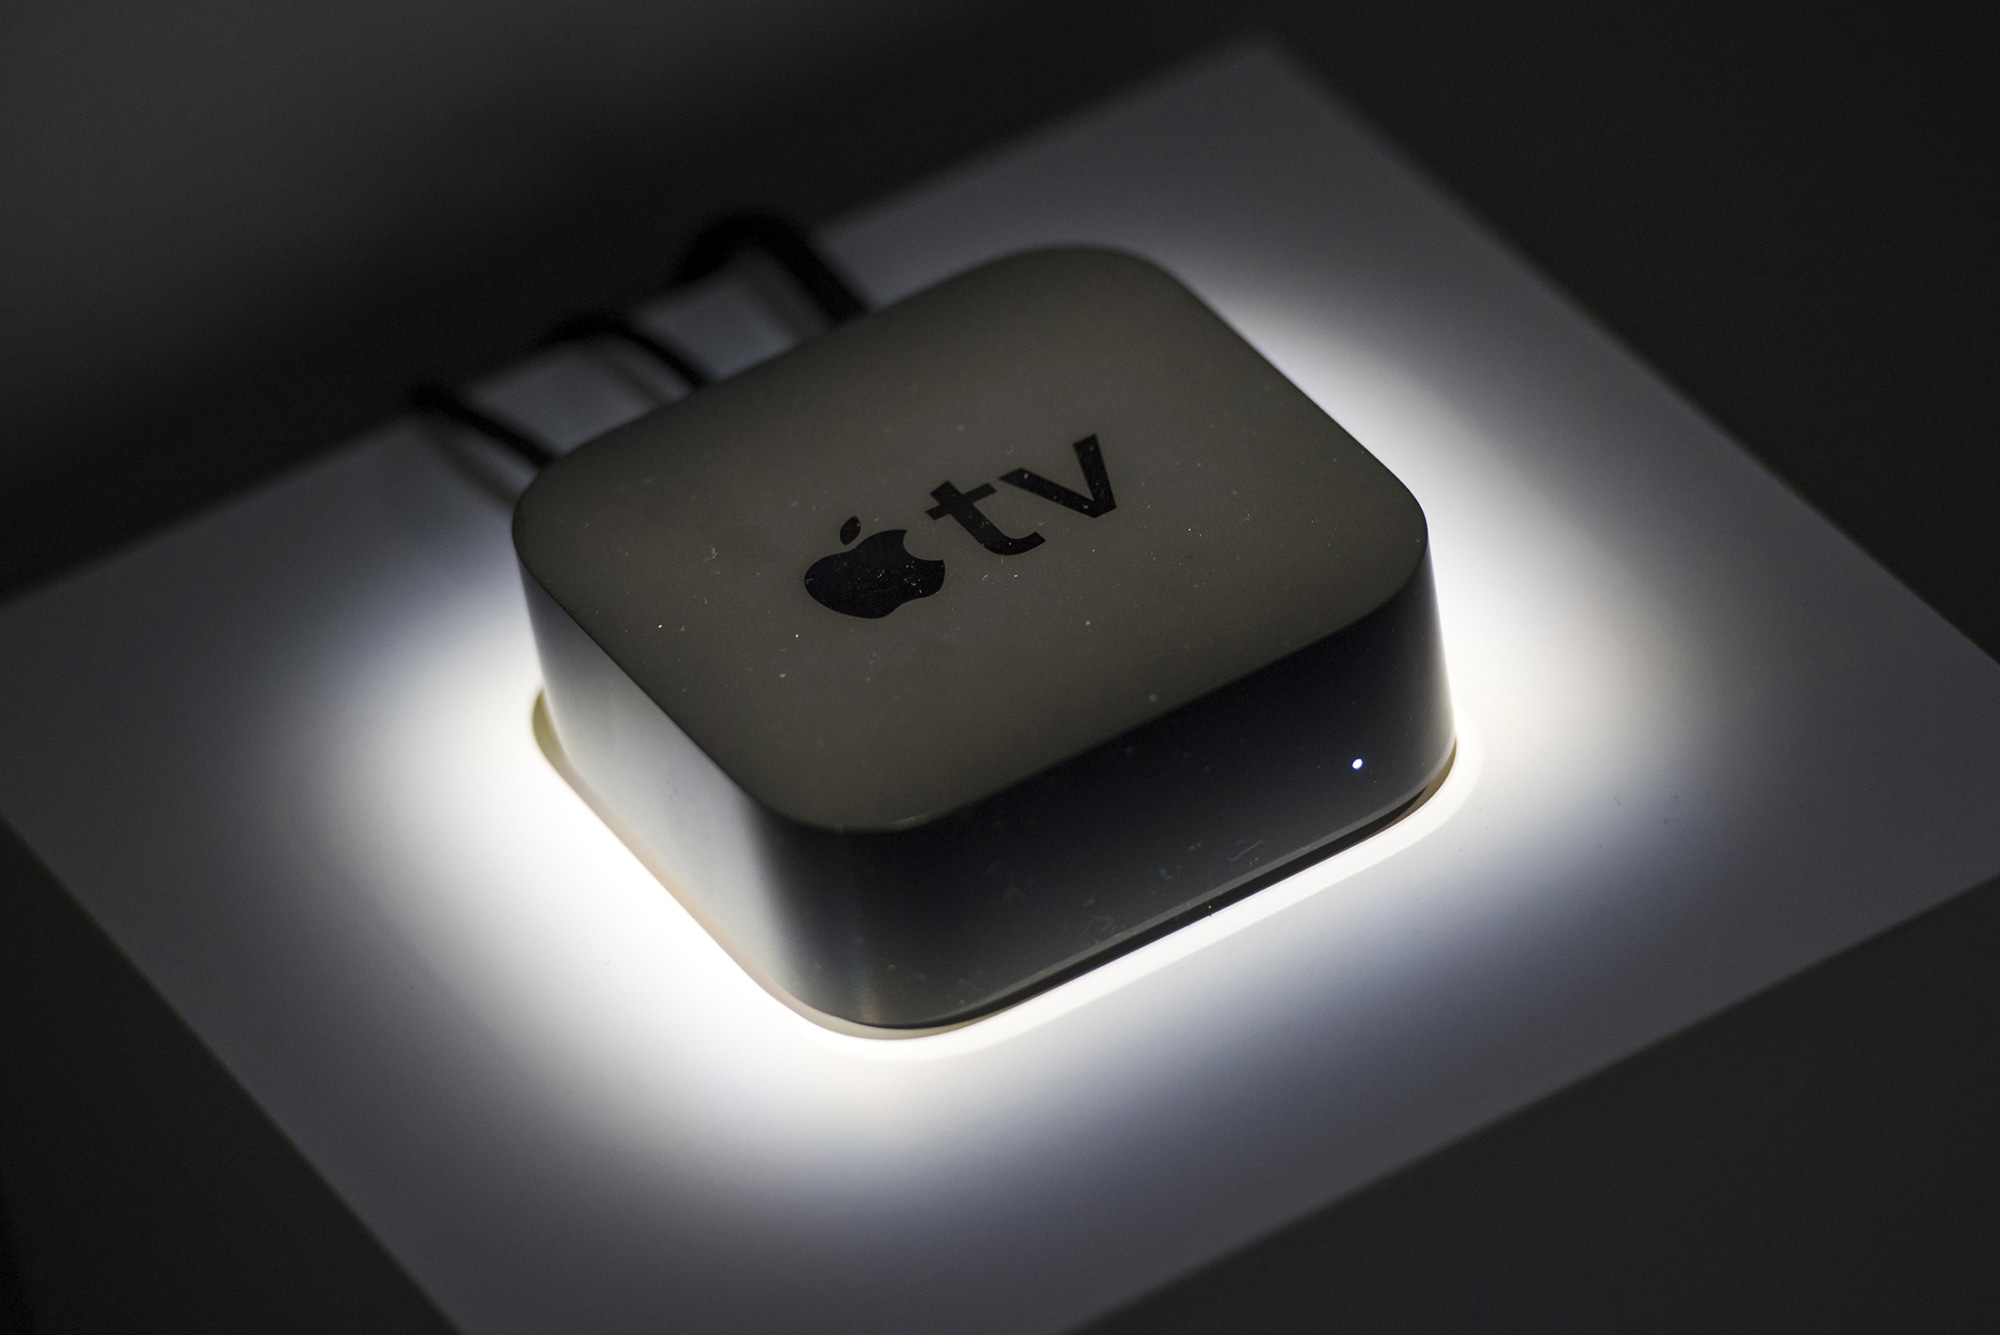 Täna välja antud tvOS-i beetaversioon toob viiteid Apple TV uutele mudelitele